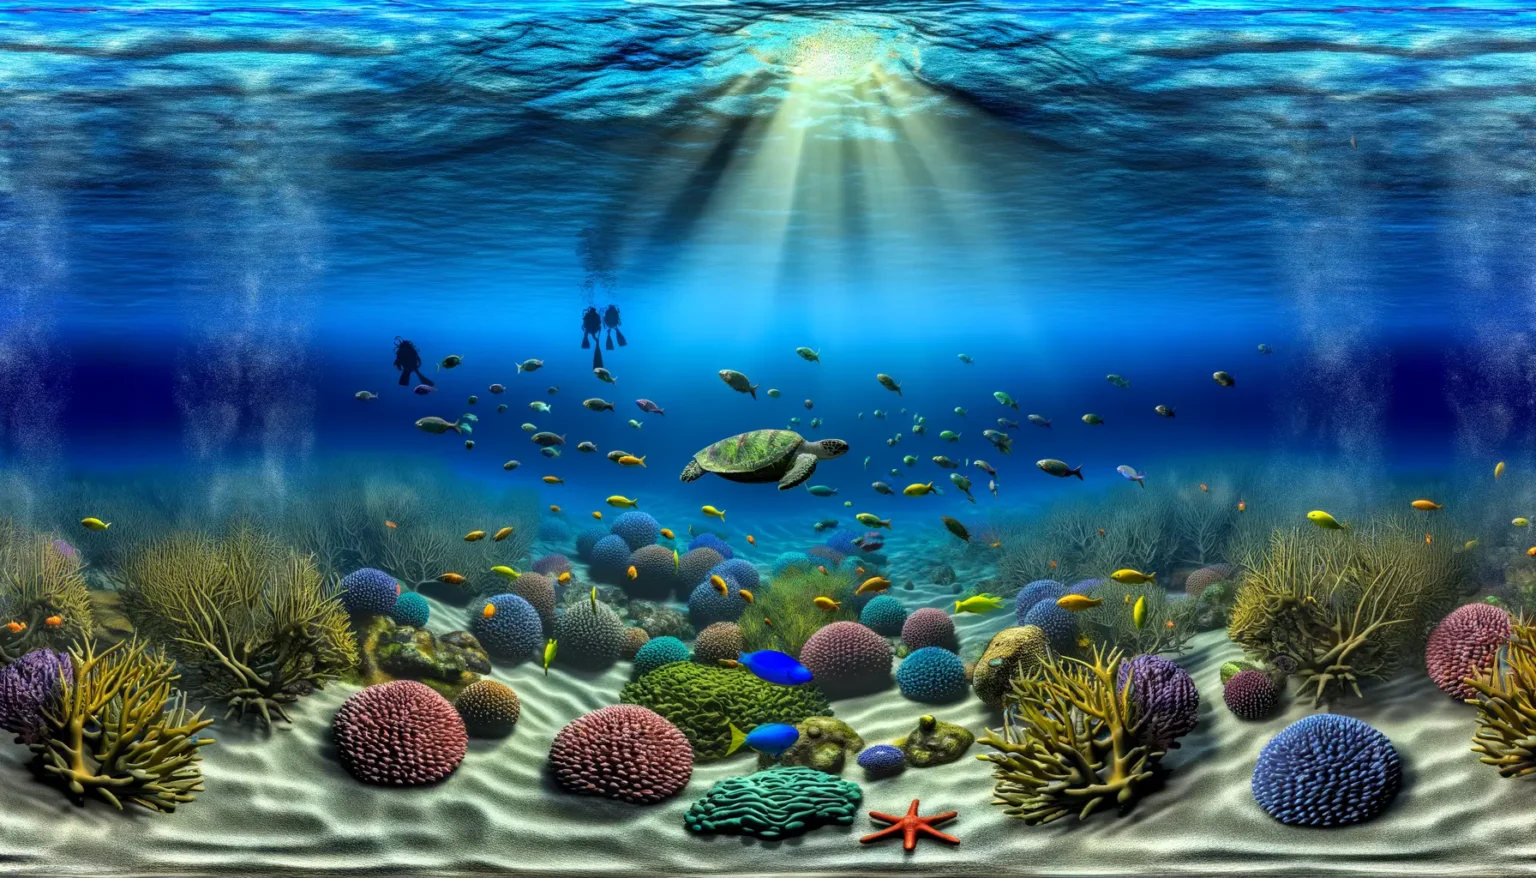 Lebendige Unterwasserszene mit kristallklarem blauen Wasser und strahlendem Sonnenlicht, das durch die Meeresoberfläche dringt und den Meeresboden beleuchtet. Farbenfrohe Meereslebewesen wie verschiedene Fische, eine Meeresschildkröte und ein Seestern sind zwischen einem Korallenriff mit unterschiedlichen Korallenarten erkennbar. Im Hintergrund schwimmen zwei Taucher in der Nähe der Wasseroberfläche.